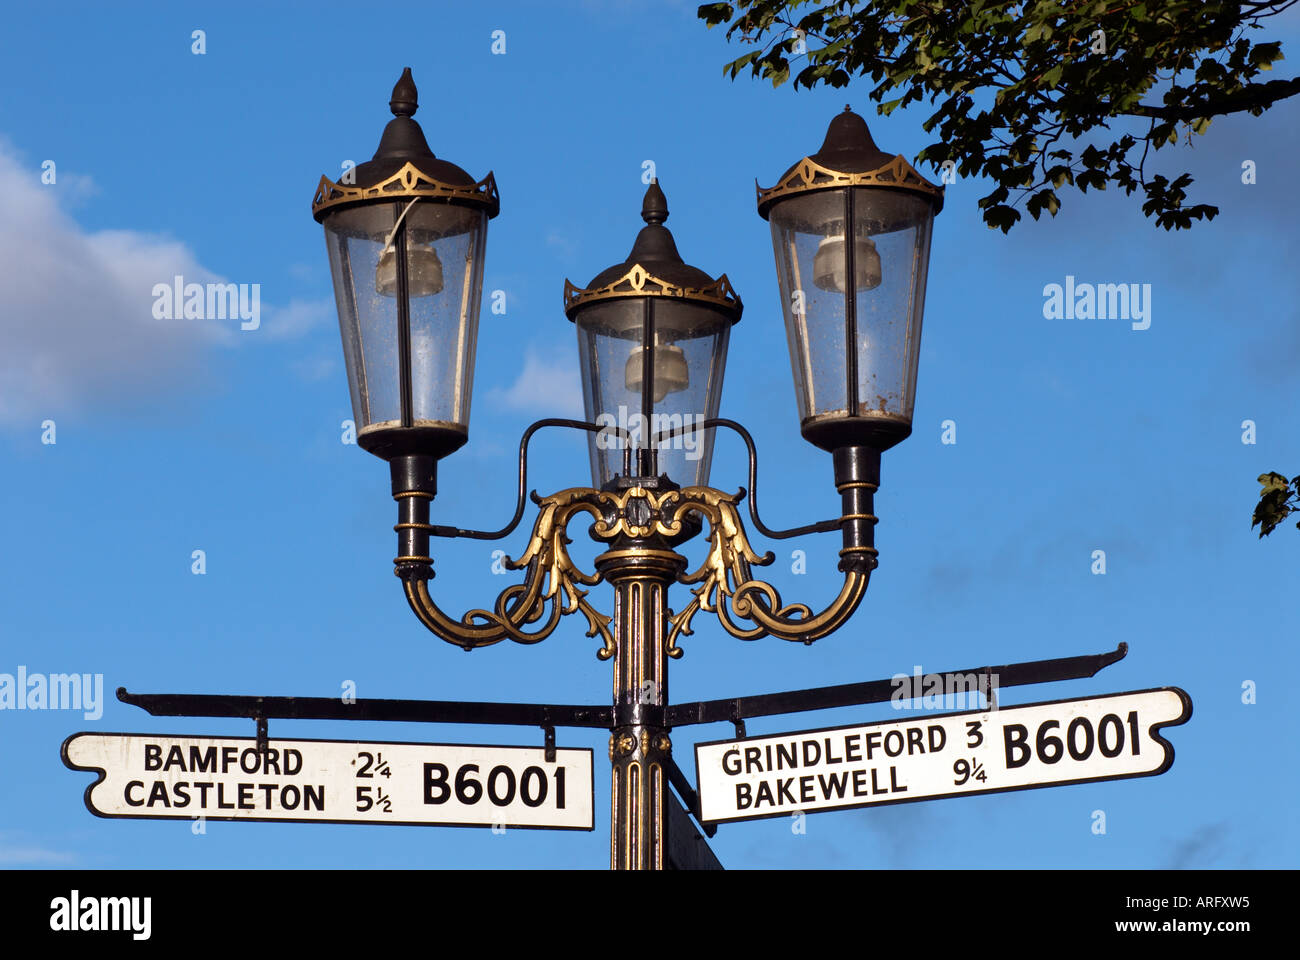 Shuttleworth memorial un lampadaire à Hathersage Derbyshire 'Grande-bretagne' Banque D'Images